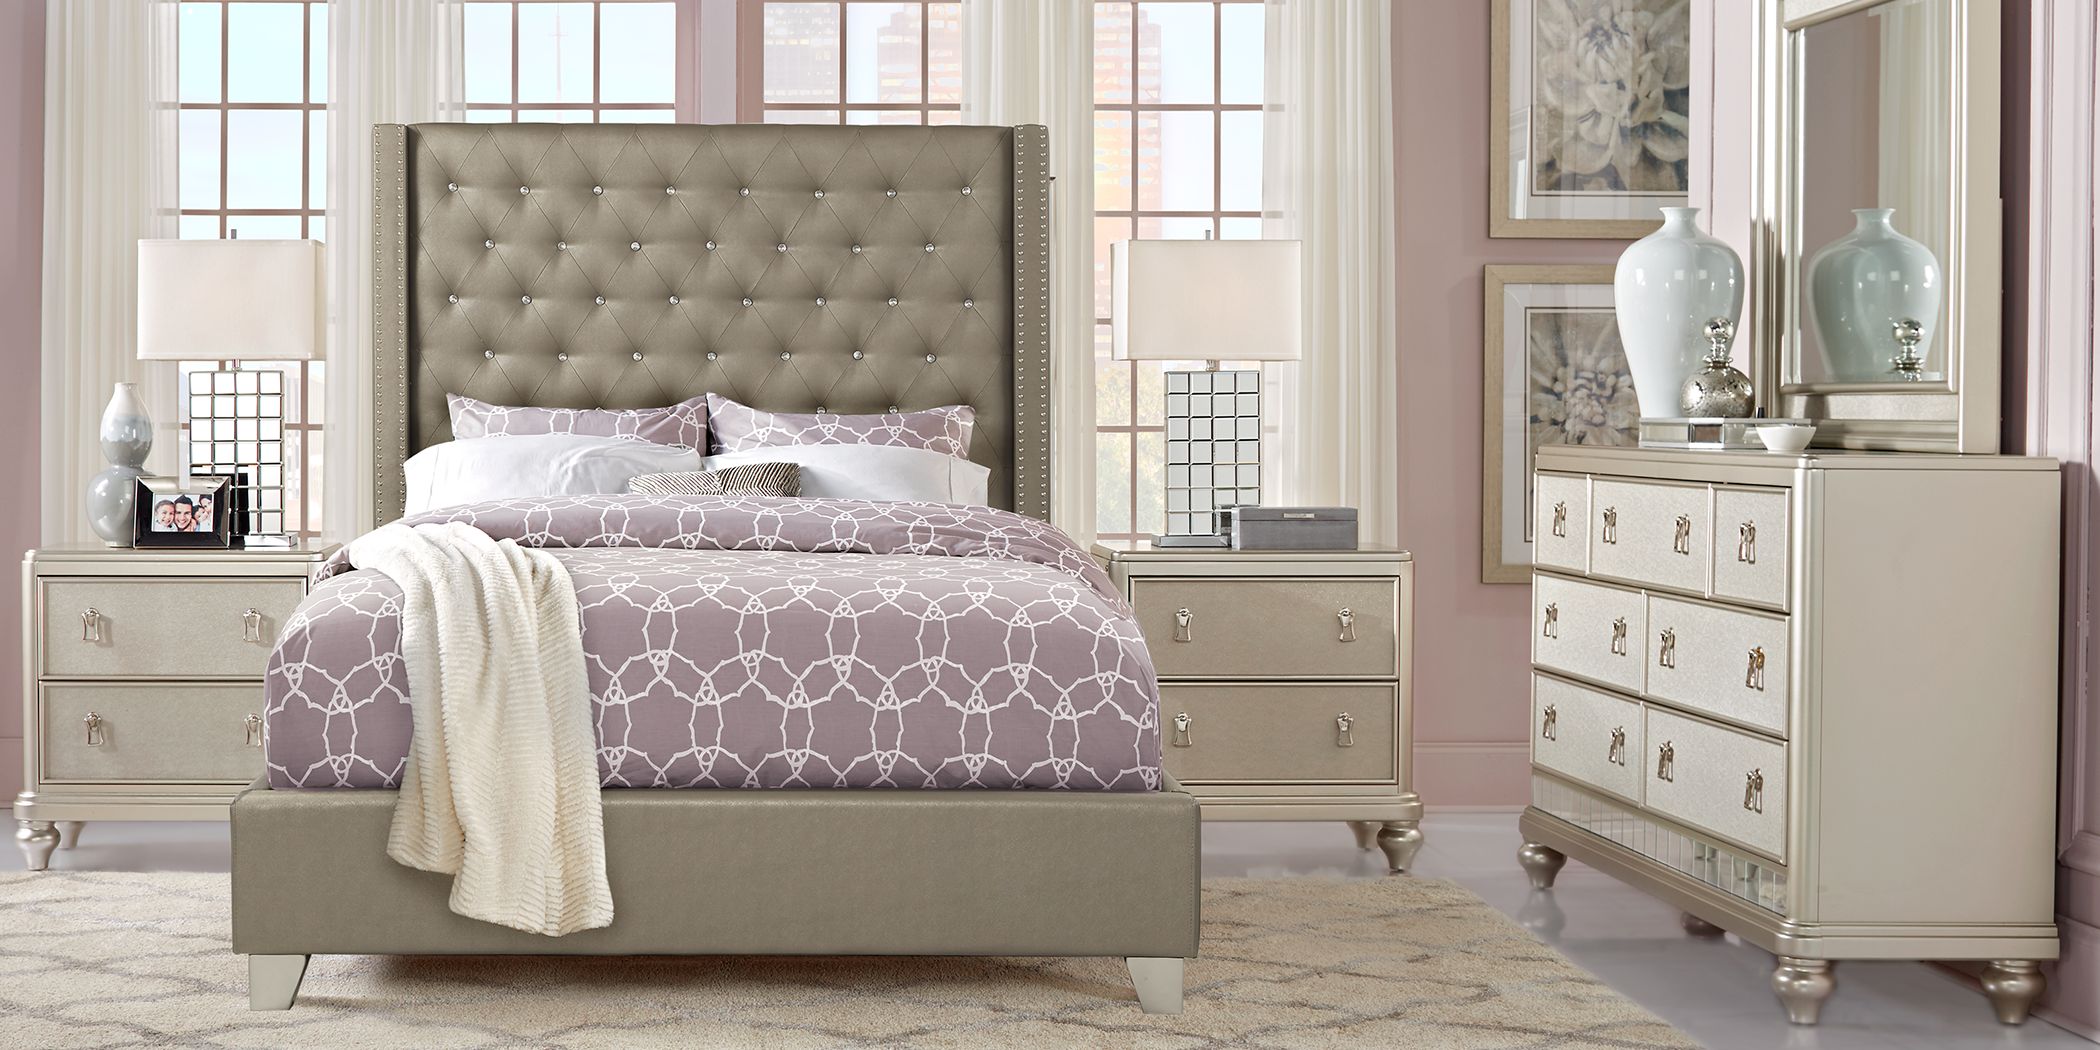 Upholstered King Size Bedroom Sets